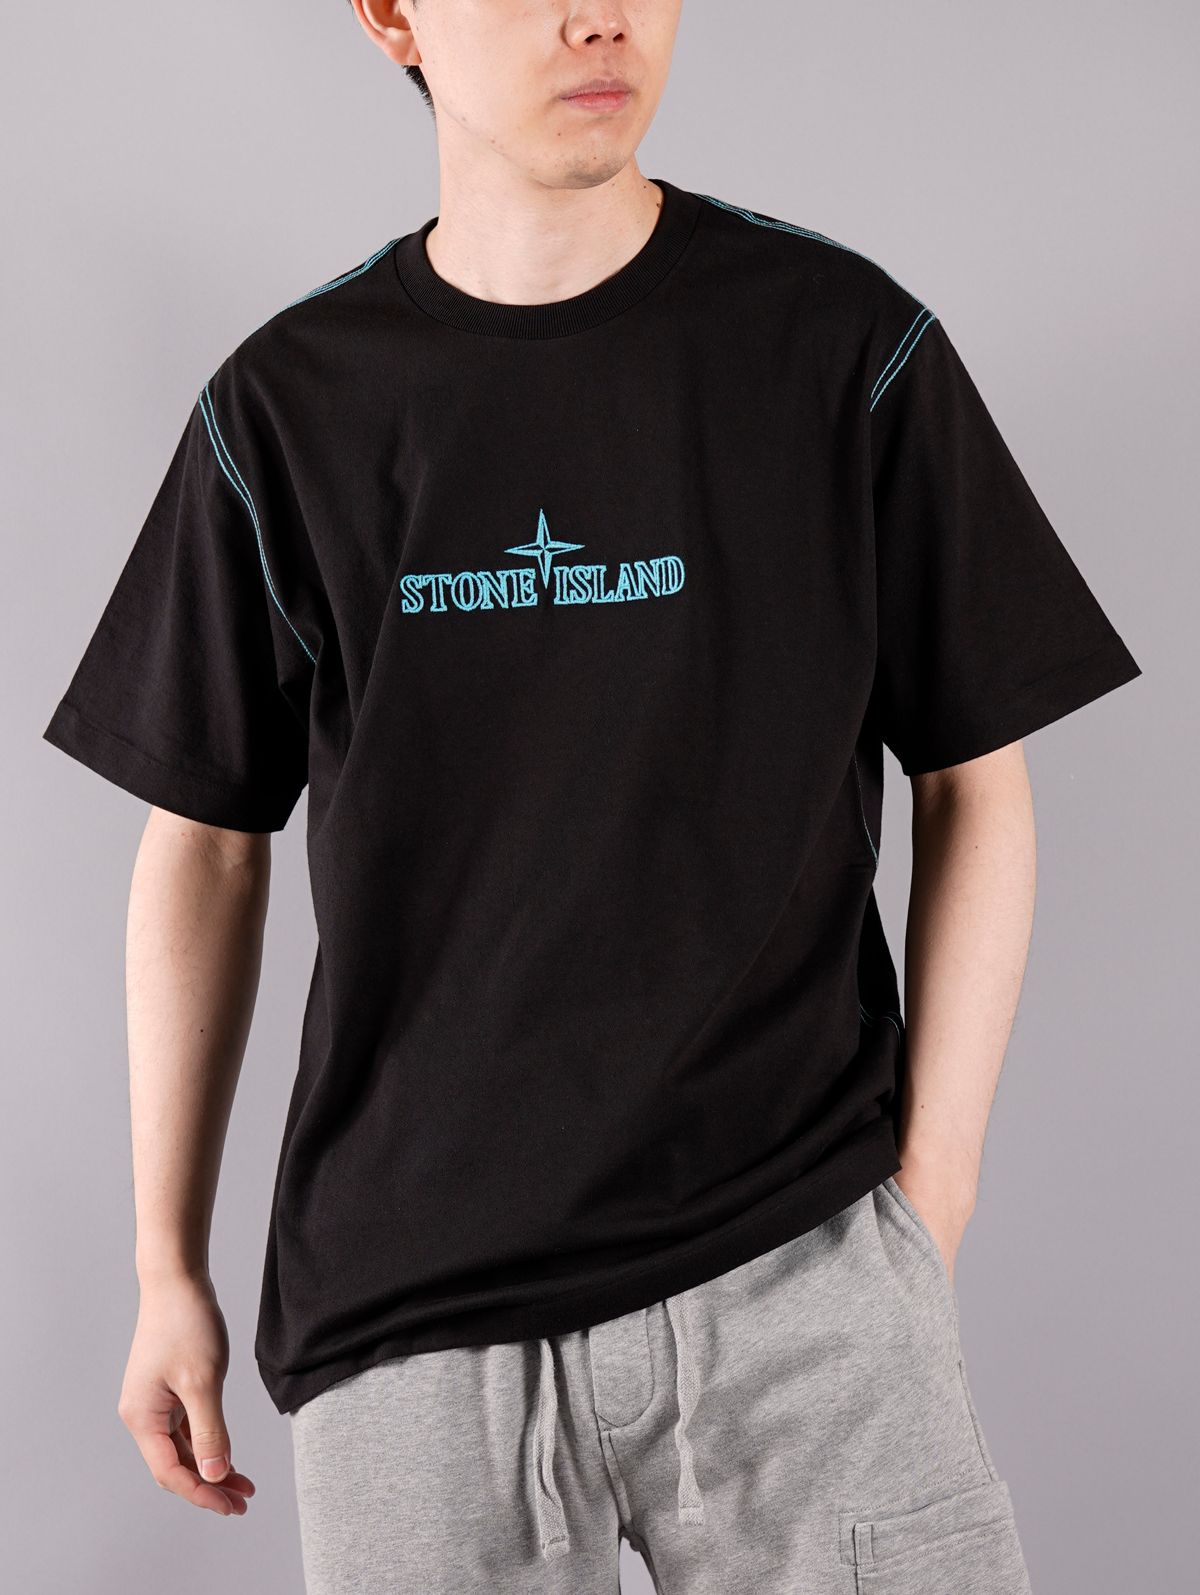 STONE ISLAND - ラスト1点 / T-SHIRT / Tシャツ (アクア) | Confidence